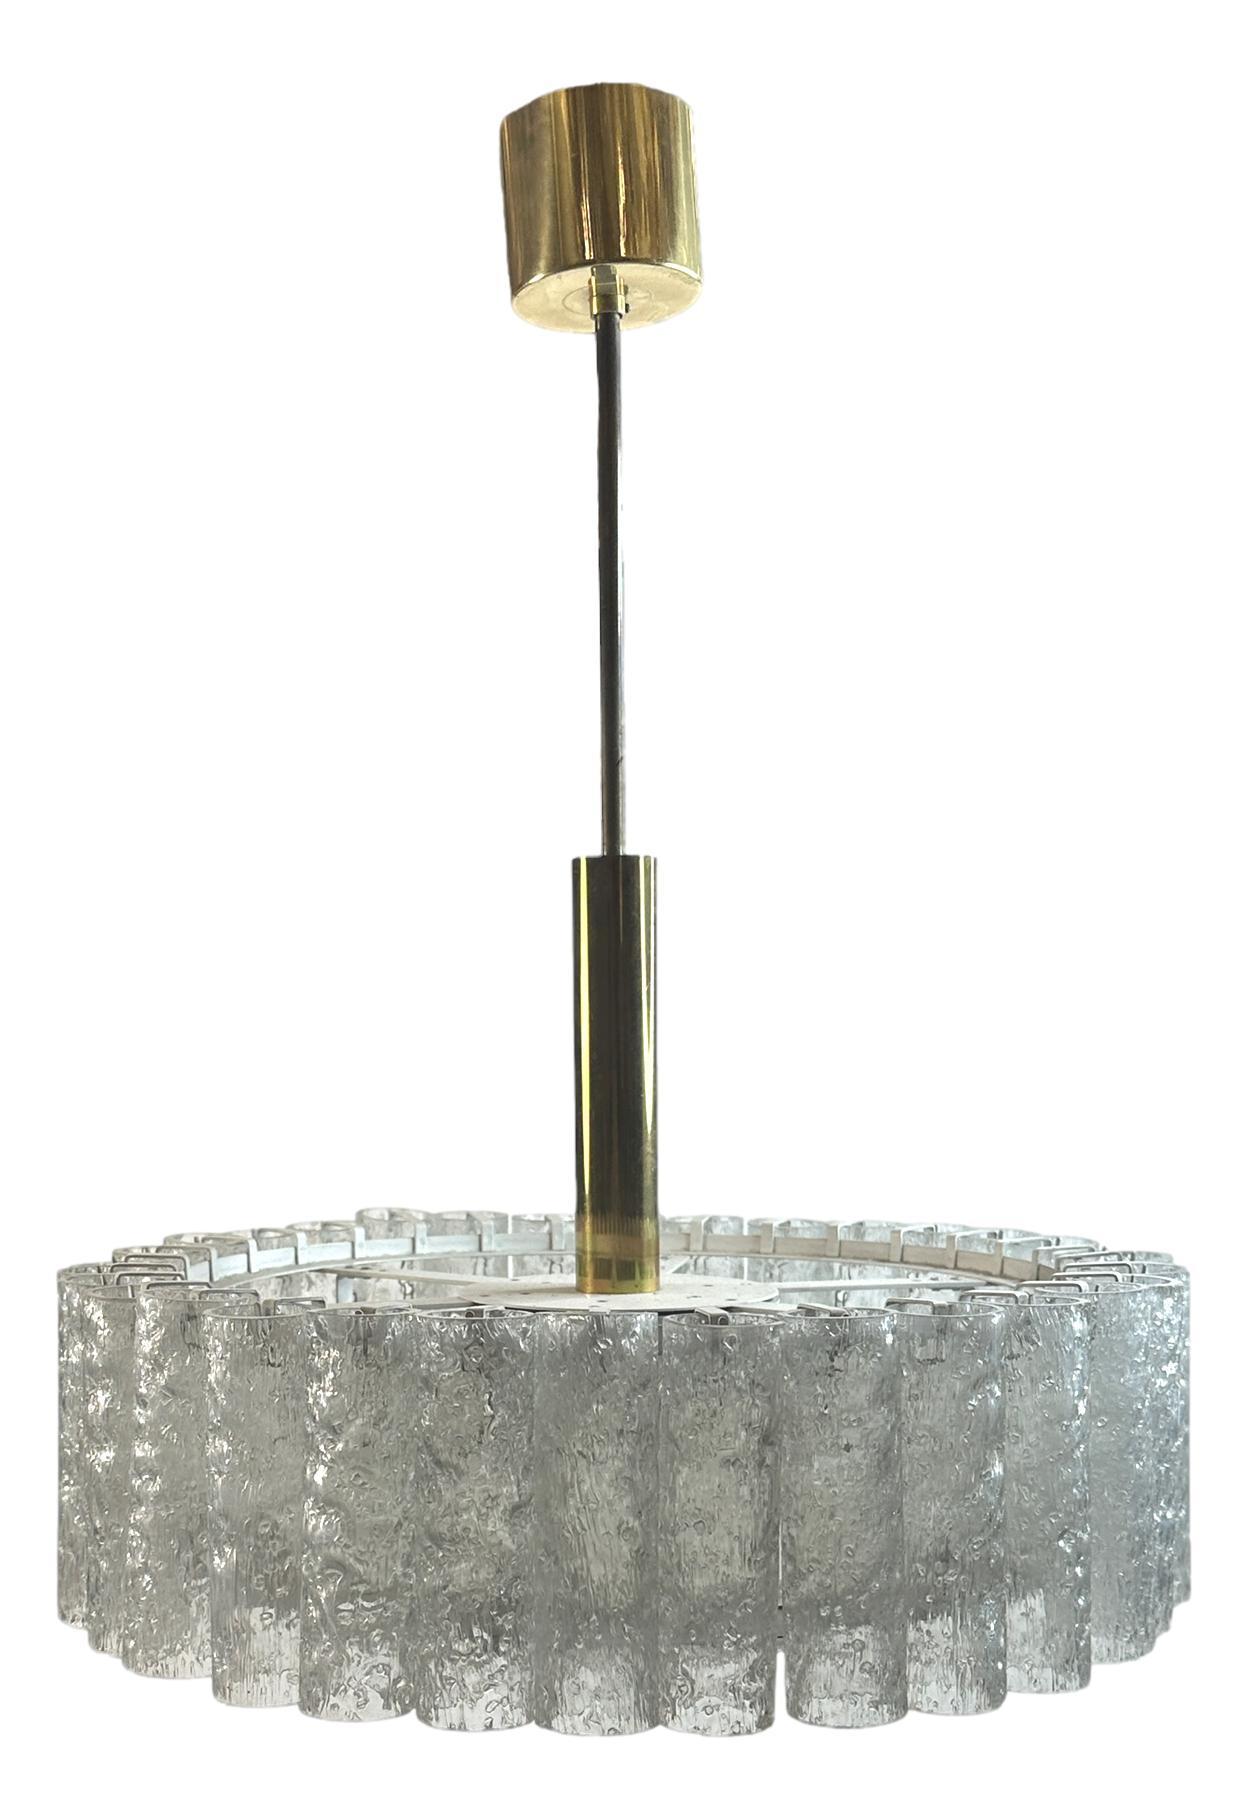 Wunderschöne Glasrohr-Pendelleuchte von Doria Leuchten, Deutschland. Sie ist in sehr gutem Zustand und benötigt sechs europäische E14 / 110-Volt-Kandelaberlampen, jede Lampe bis zu 40 Watt. Gefunden bei einem Nachlassverkauf in Nürnberg,